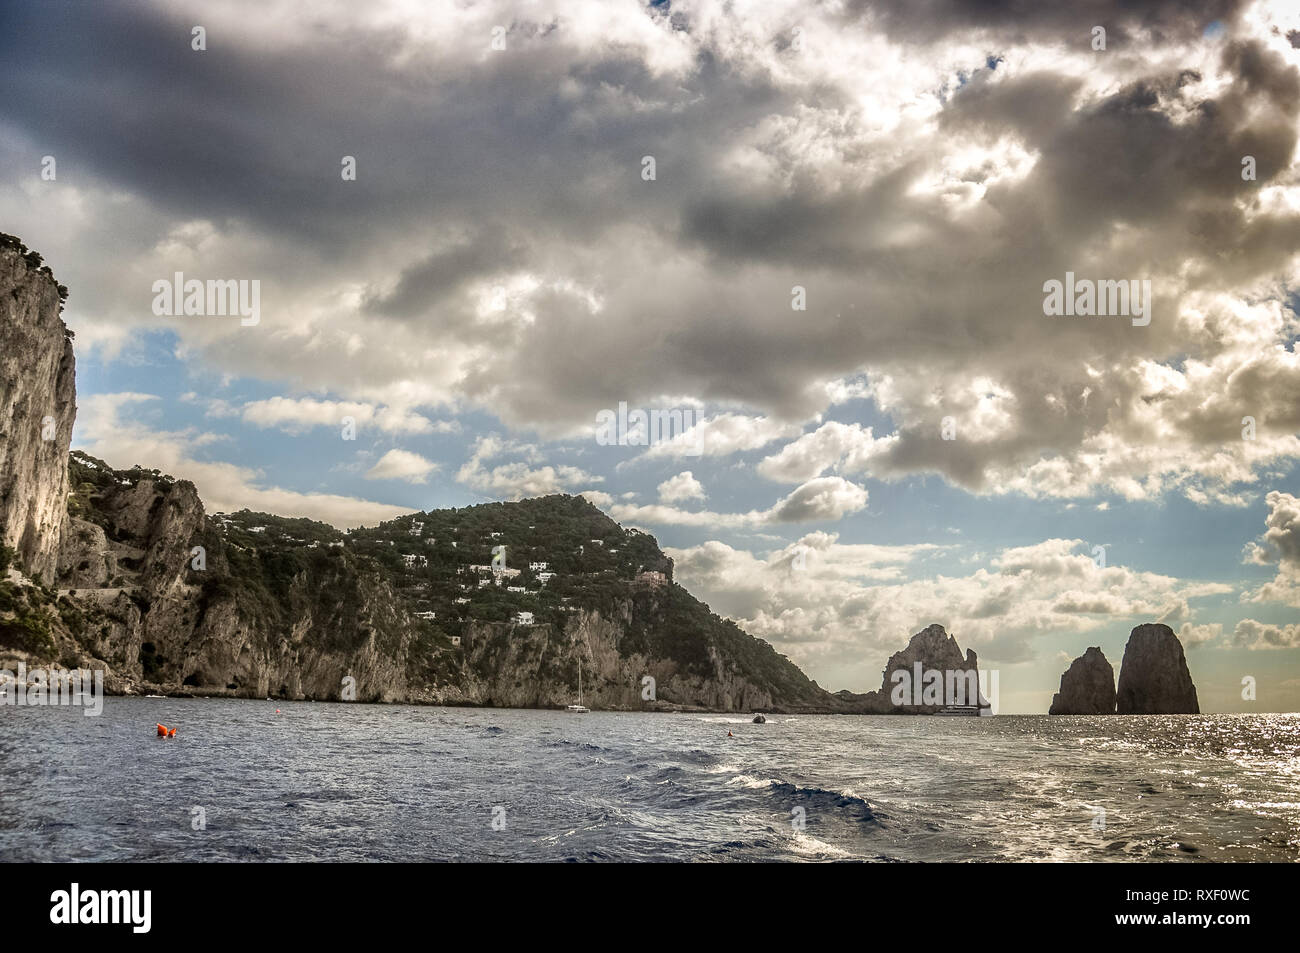 Panorama of the coast of the island of Capri and Faraglioni, Italy Stock Photo